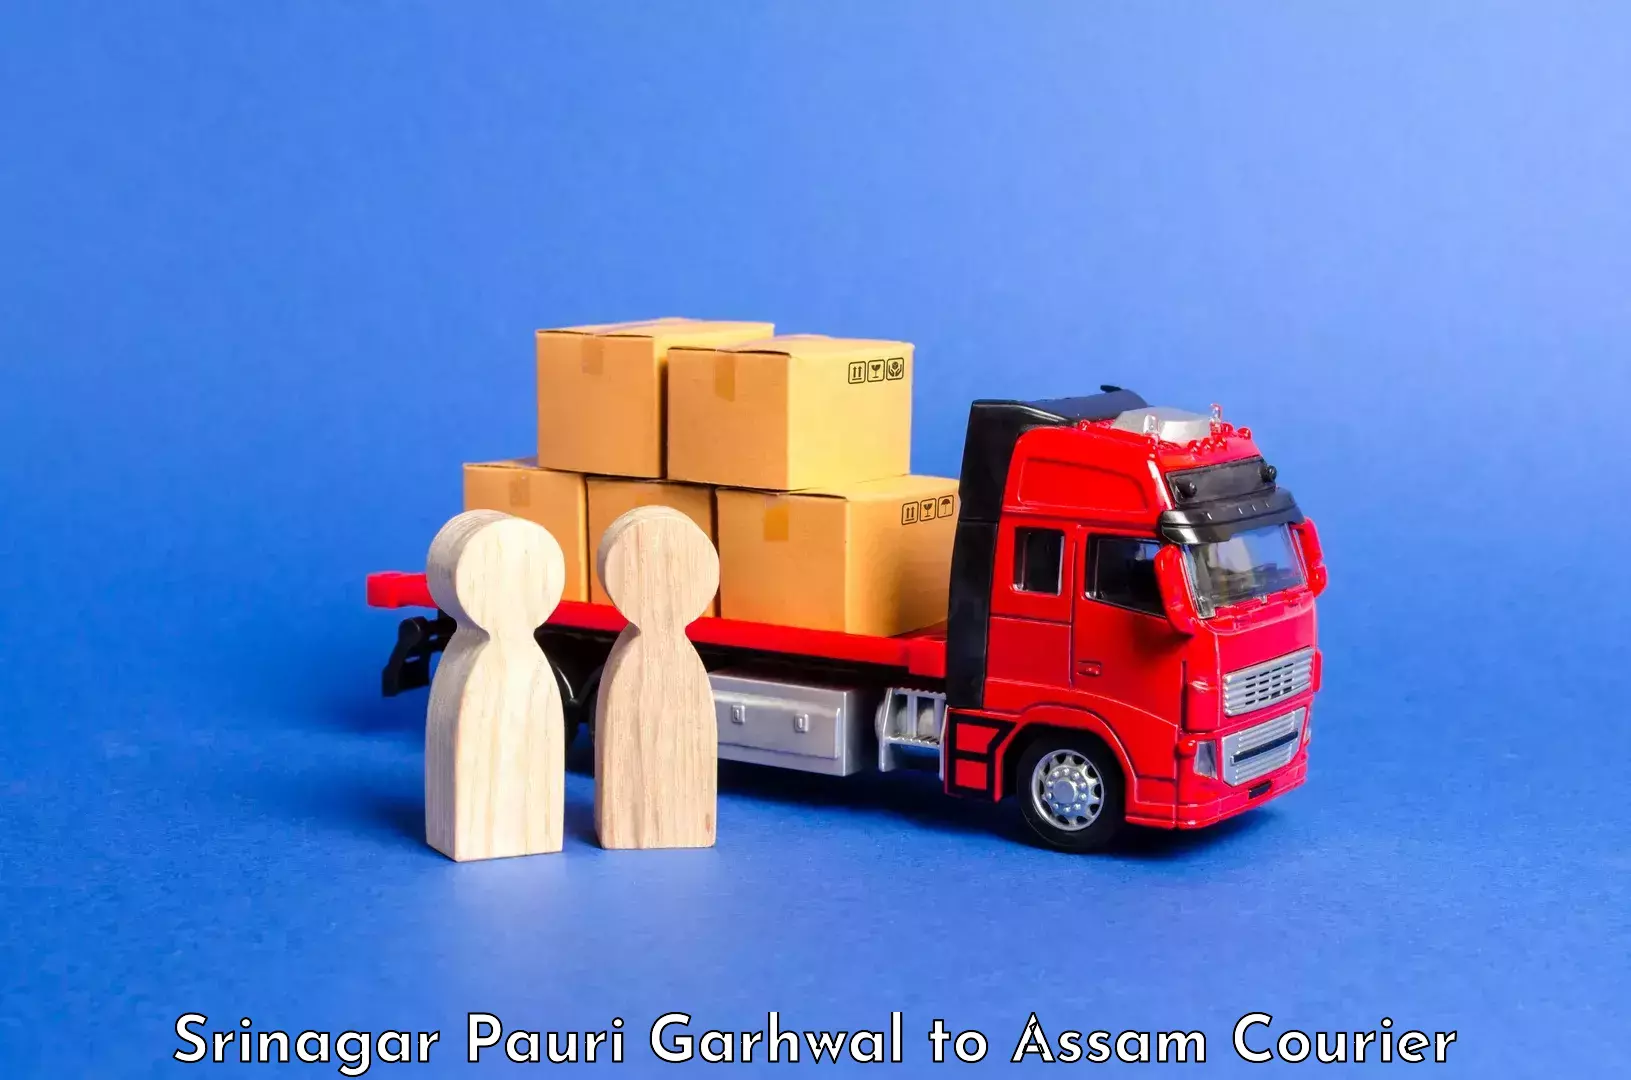 Luggage shipment specialists Srinagar Pauri Garhwal to Pathsala